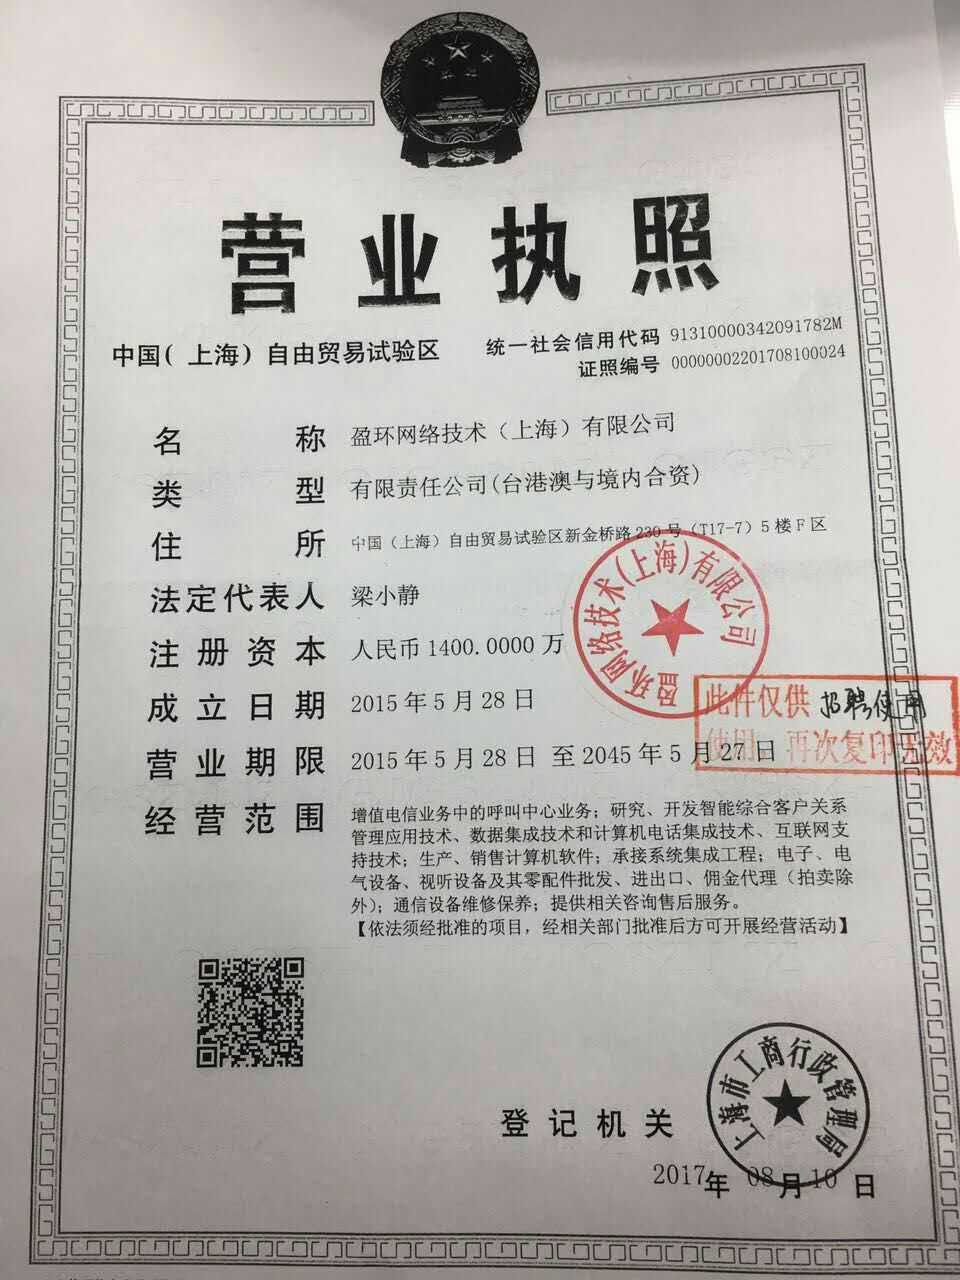 元/月 性别要求:不限 年龄要求:20-40岁 工作地点:上海上海浦东